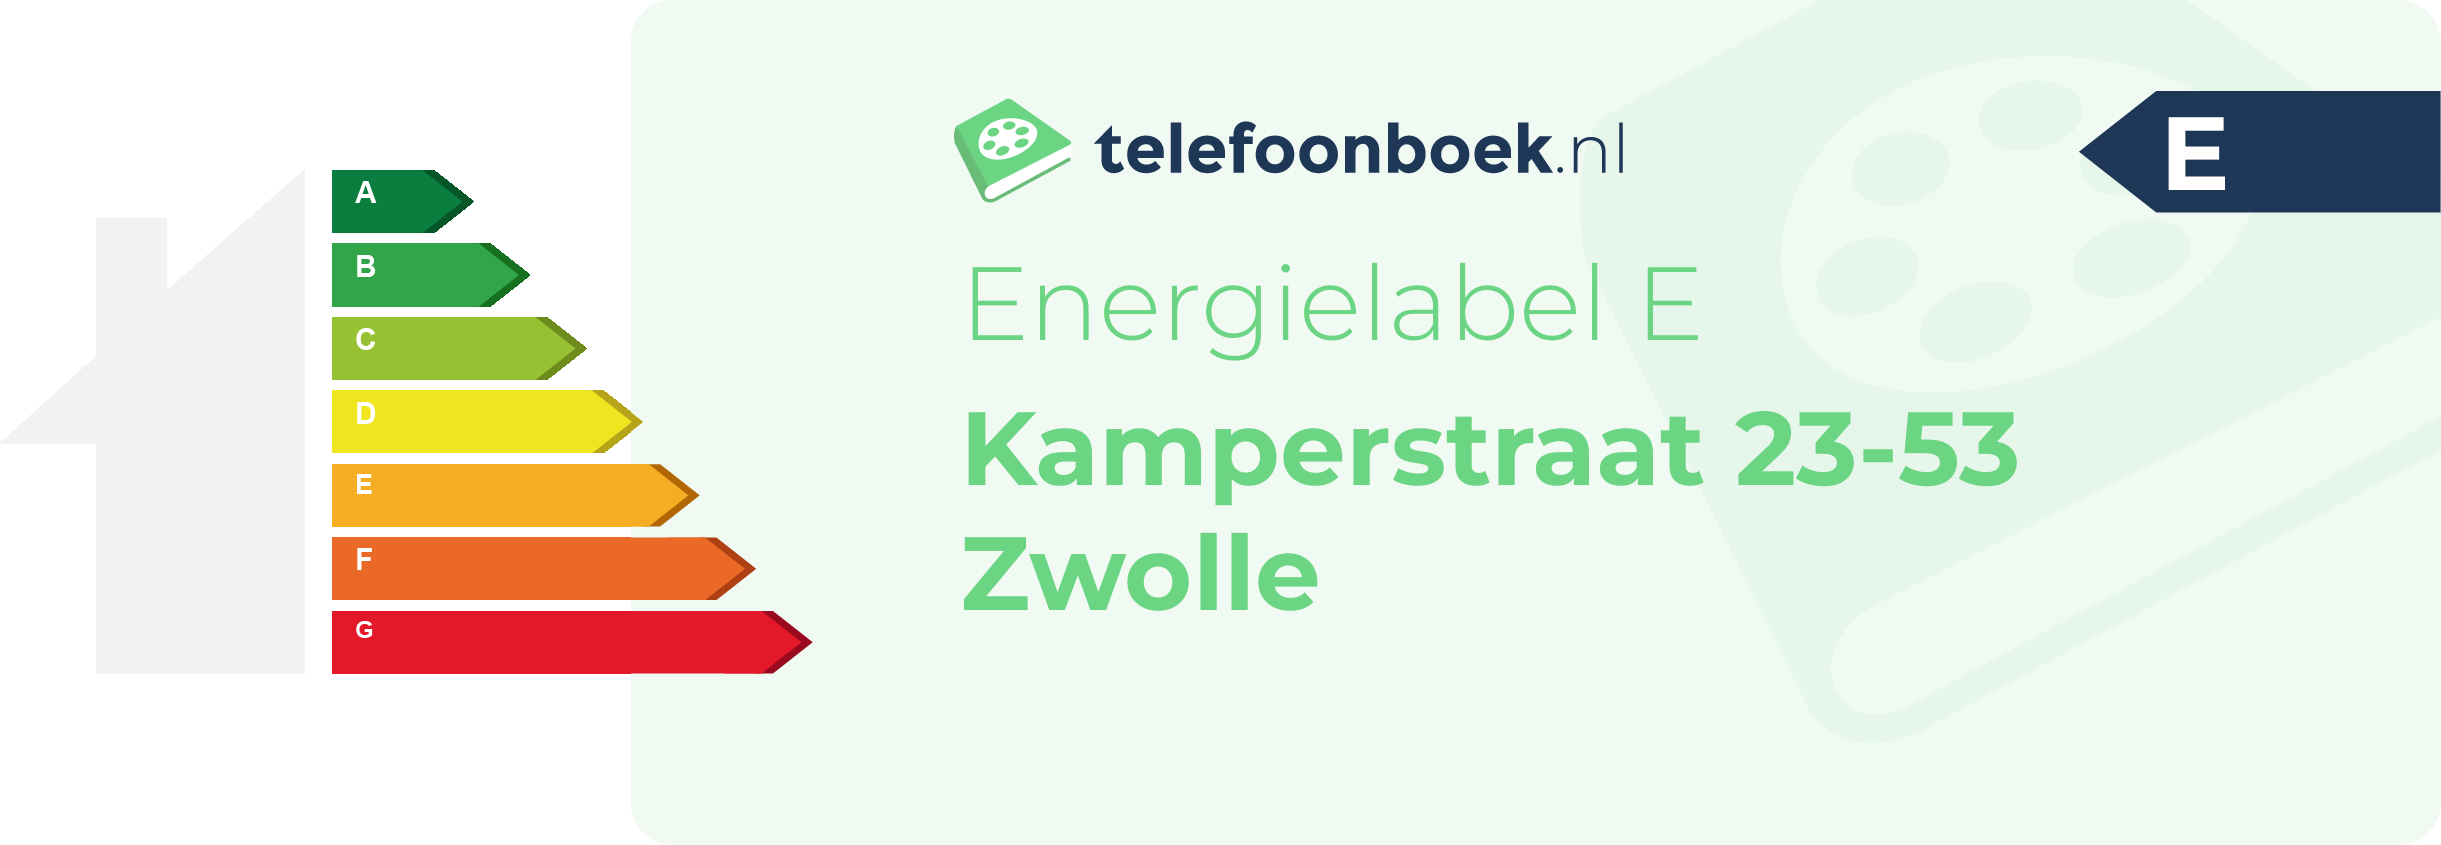 Energielabel Kamperstraat 23-53 Zwolle